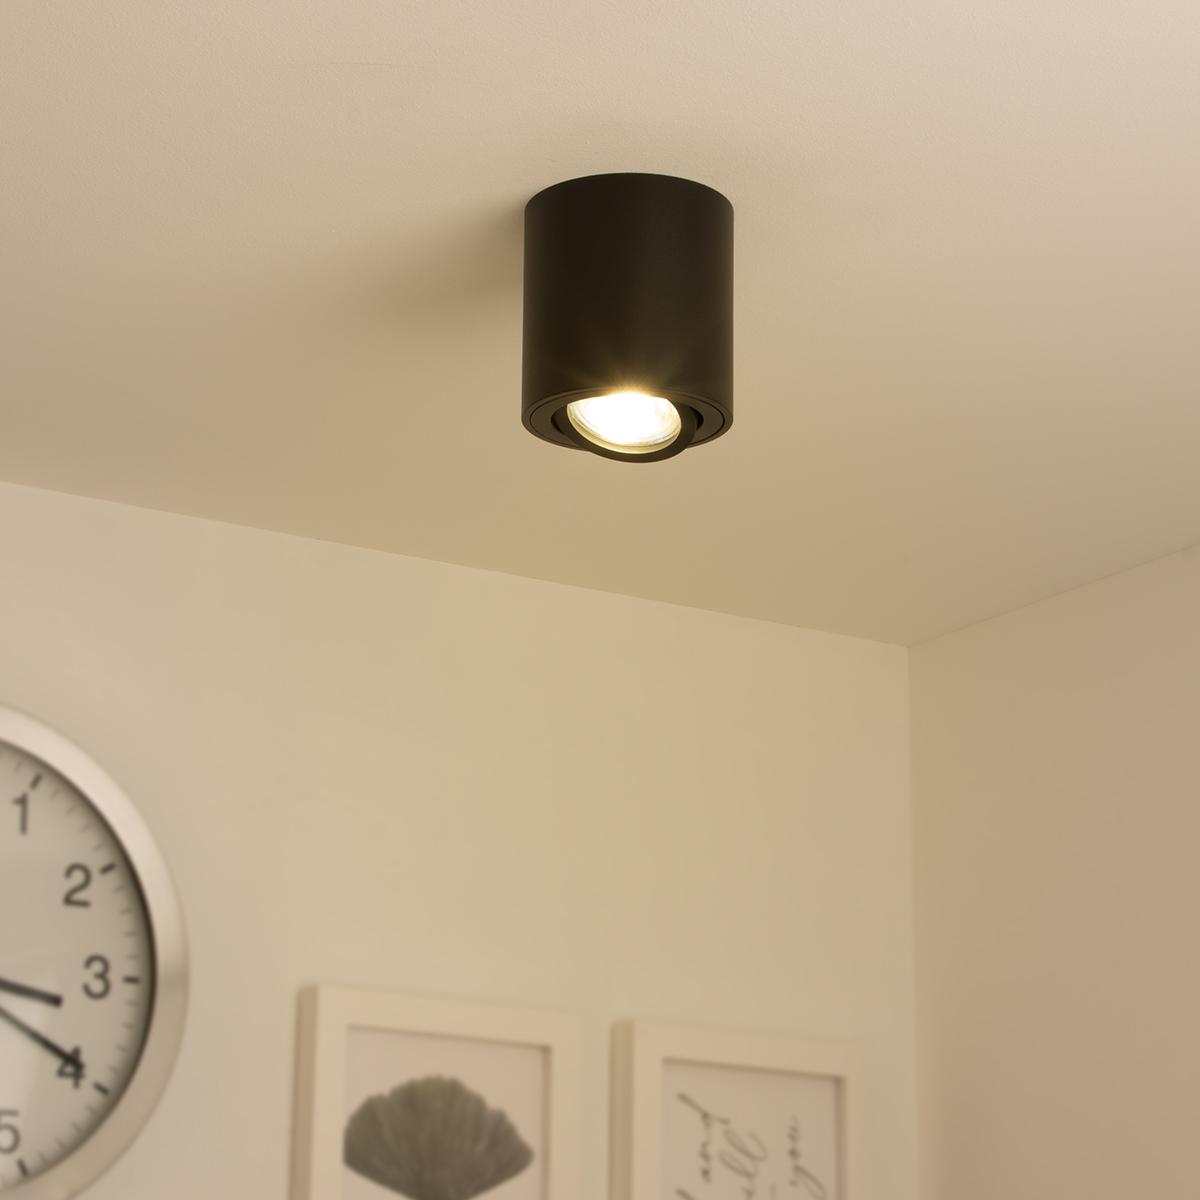 Runder Aufbaustrahler schwenkbar Deckenbeleuchtung - Farbe: schwarz - LED Leuchtmittel: GU10 5W Warmweiß 230V 40°